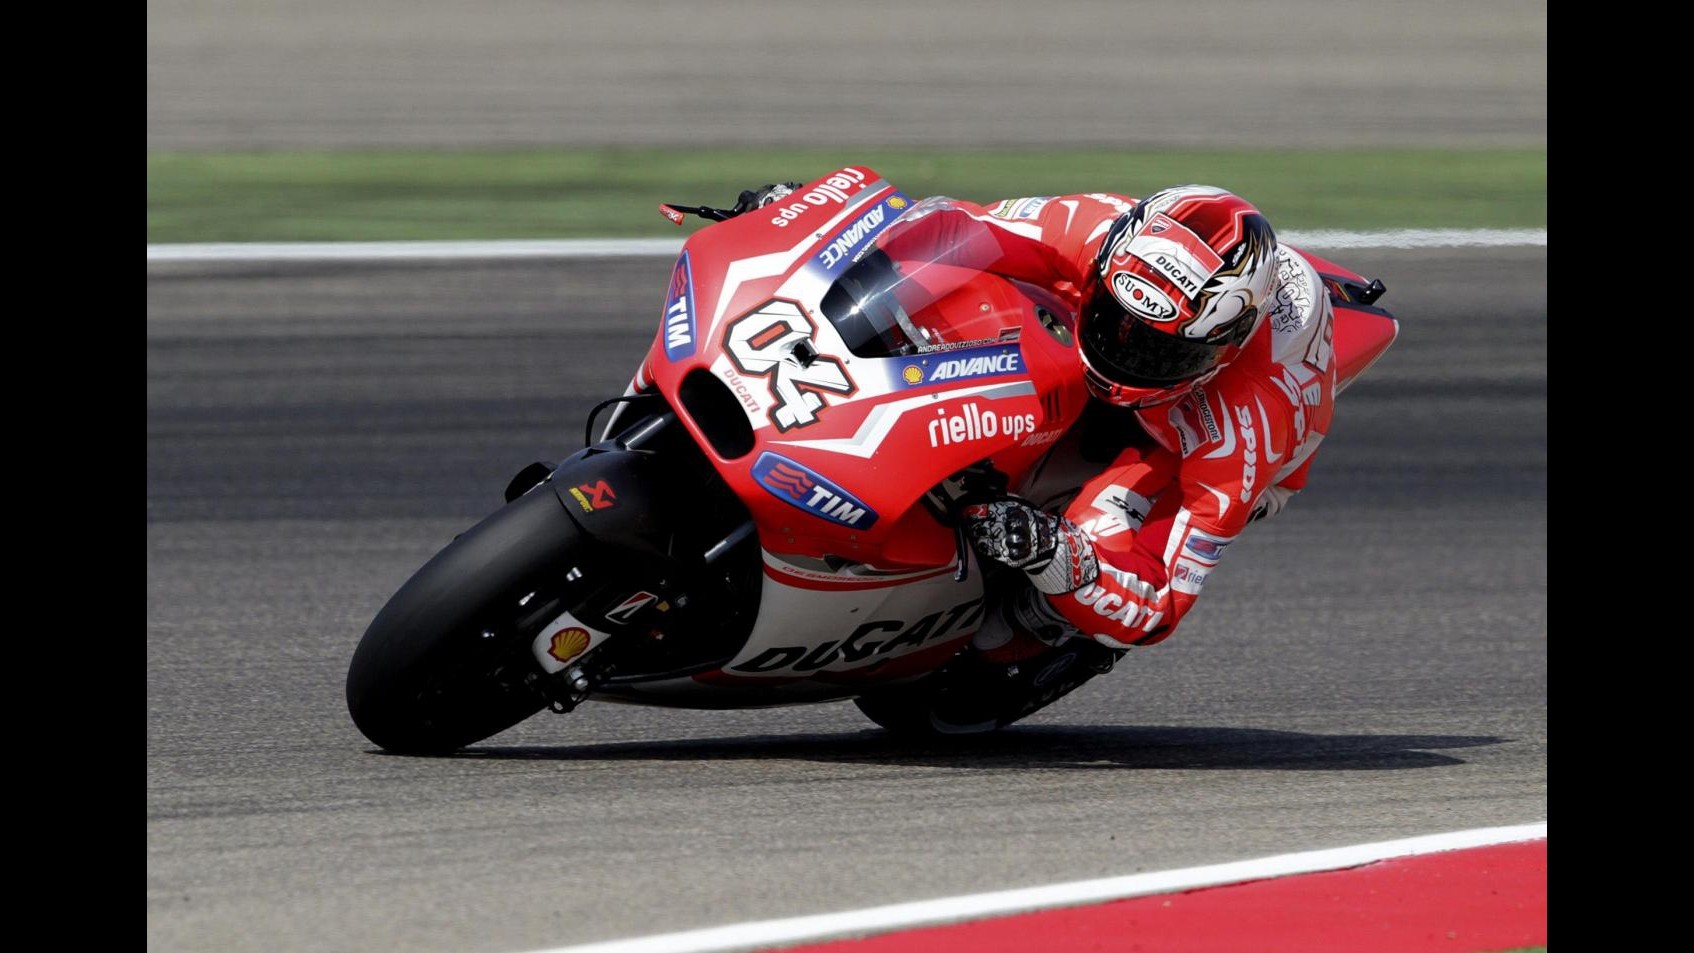 MotoGp, Giappone: Ducati super, Dovizioso leader in seconde libere. 5° Rossi